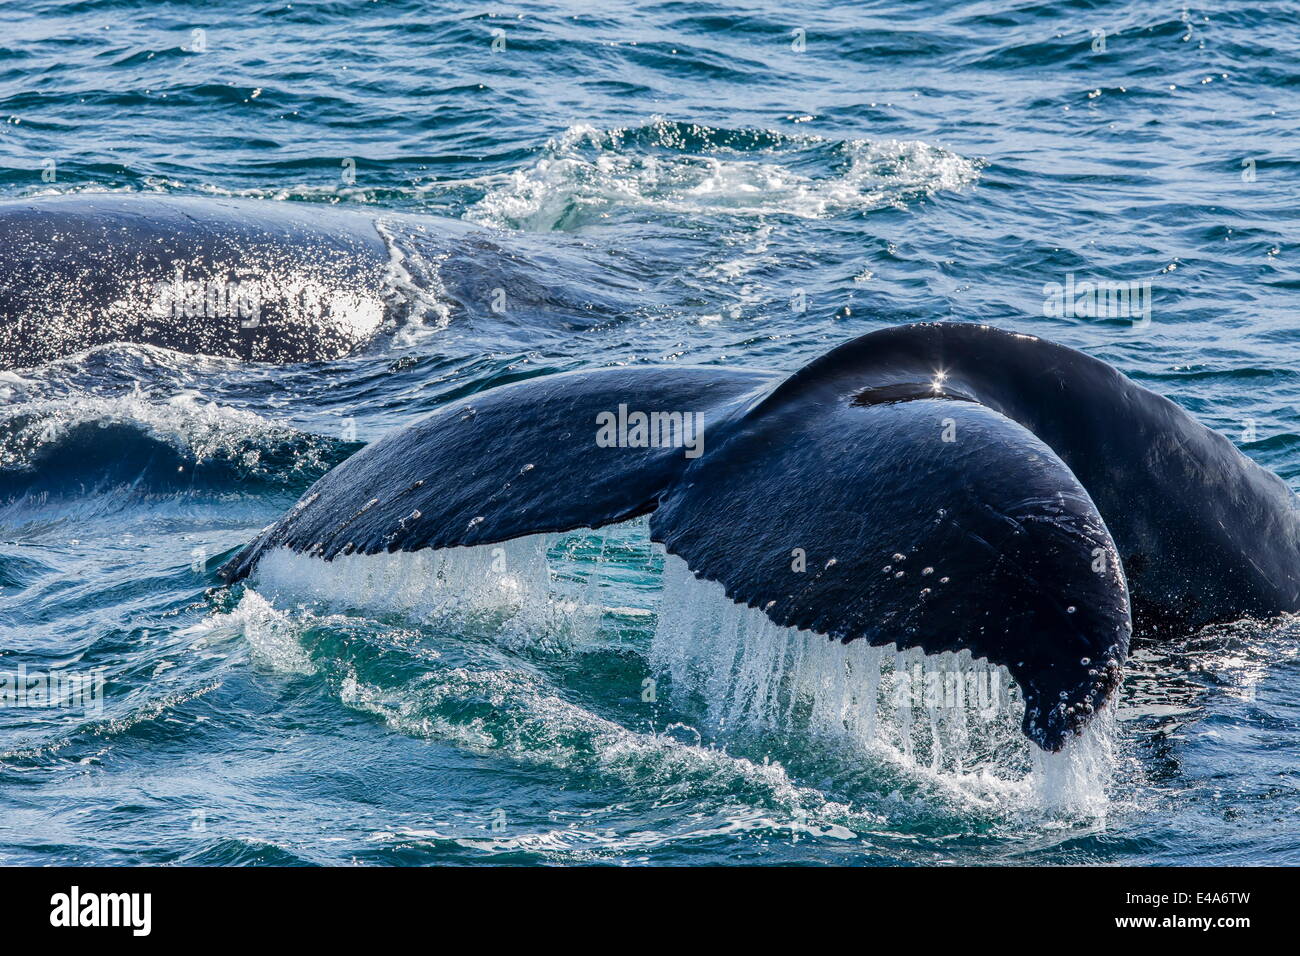 Baleine à bosse (Megaptera novaeangliae) jusqu'à la nageoire caudale en plongée Baie Dallmann, Antarctique, les régions polaires Banque D'Images